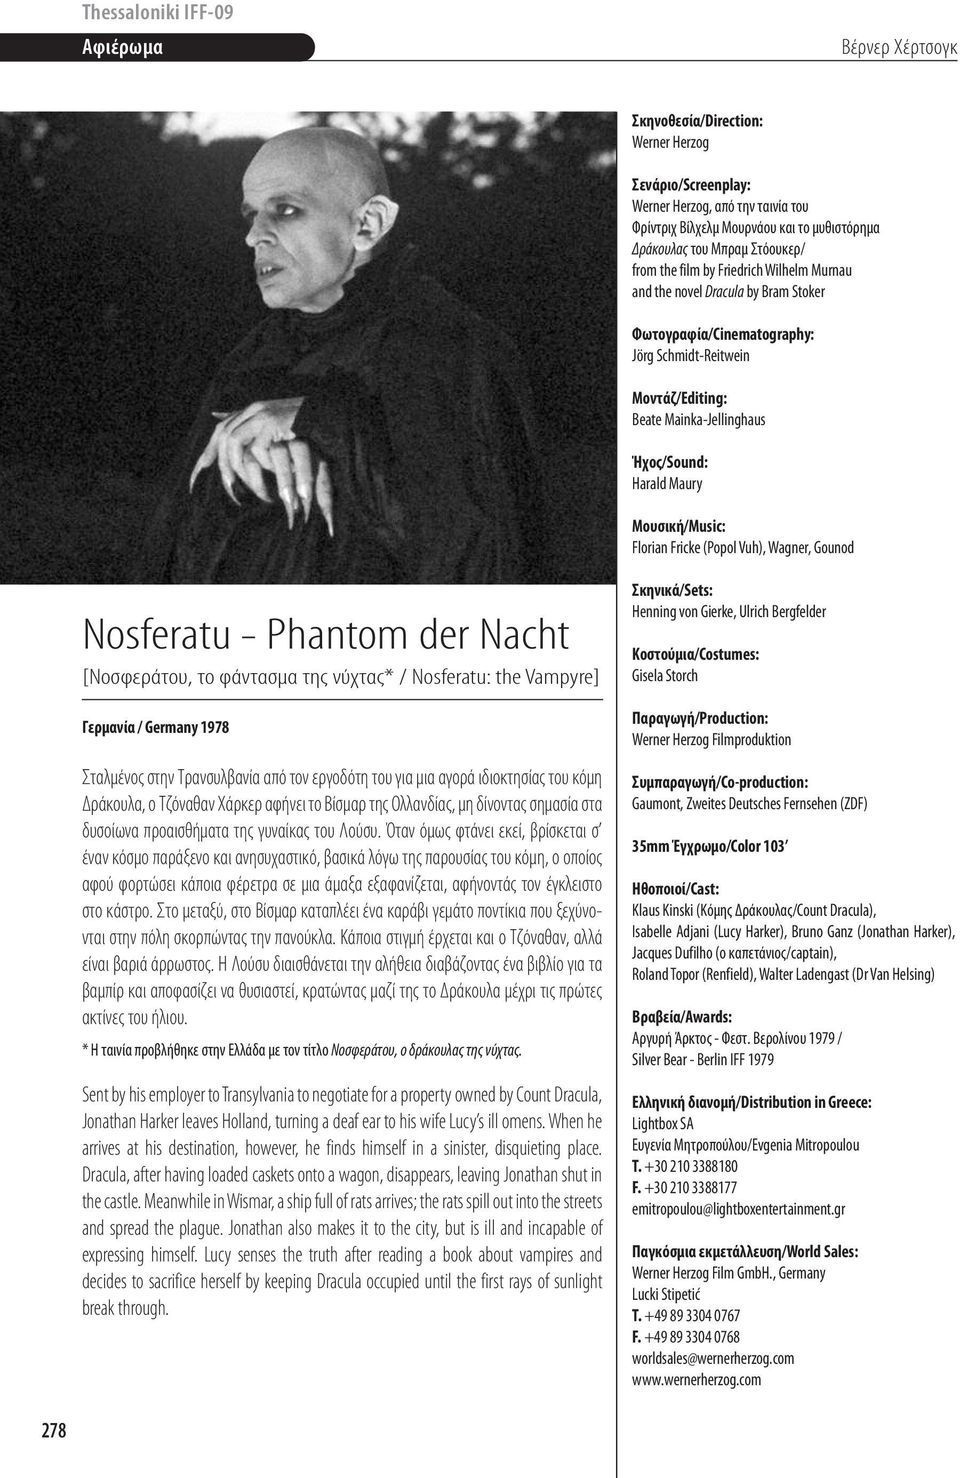 [Noσφεράτου, το φάντασμα της νύχτας* / Nosferatu: the Vampyre] Γερμανία / Germany 1978 Σταλμένος στην Τρανσυλβανία από τον εργοδότη του για μια αγορά ιδιοκτησίας του κόμη Δράκουλα, ο Τζόναθαν Χάρκερ